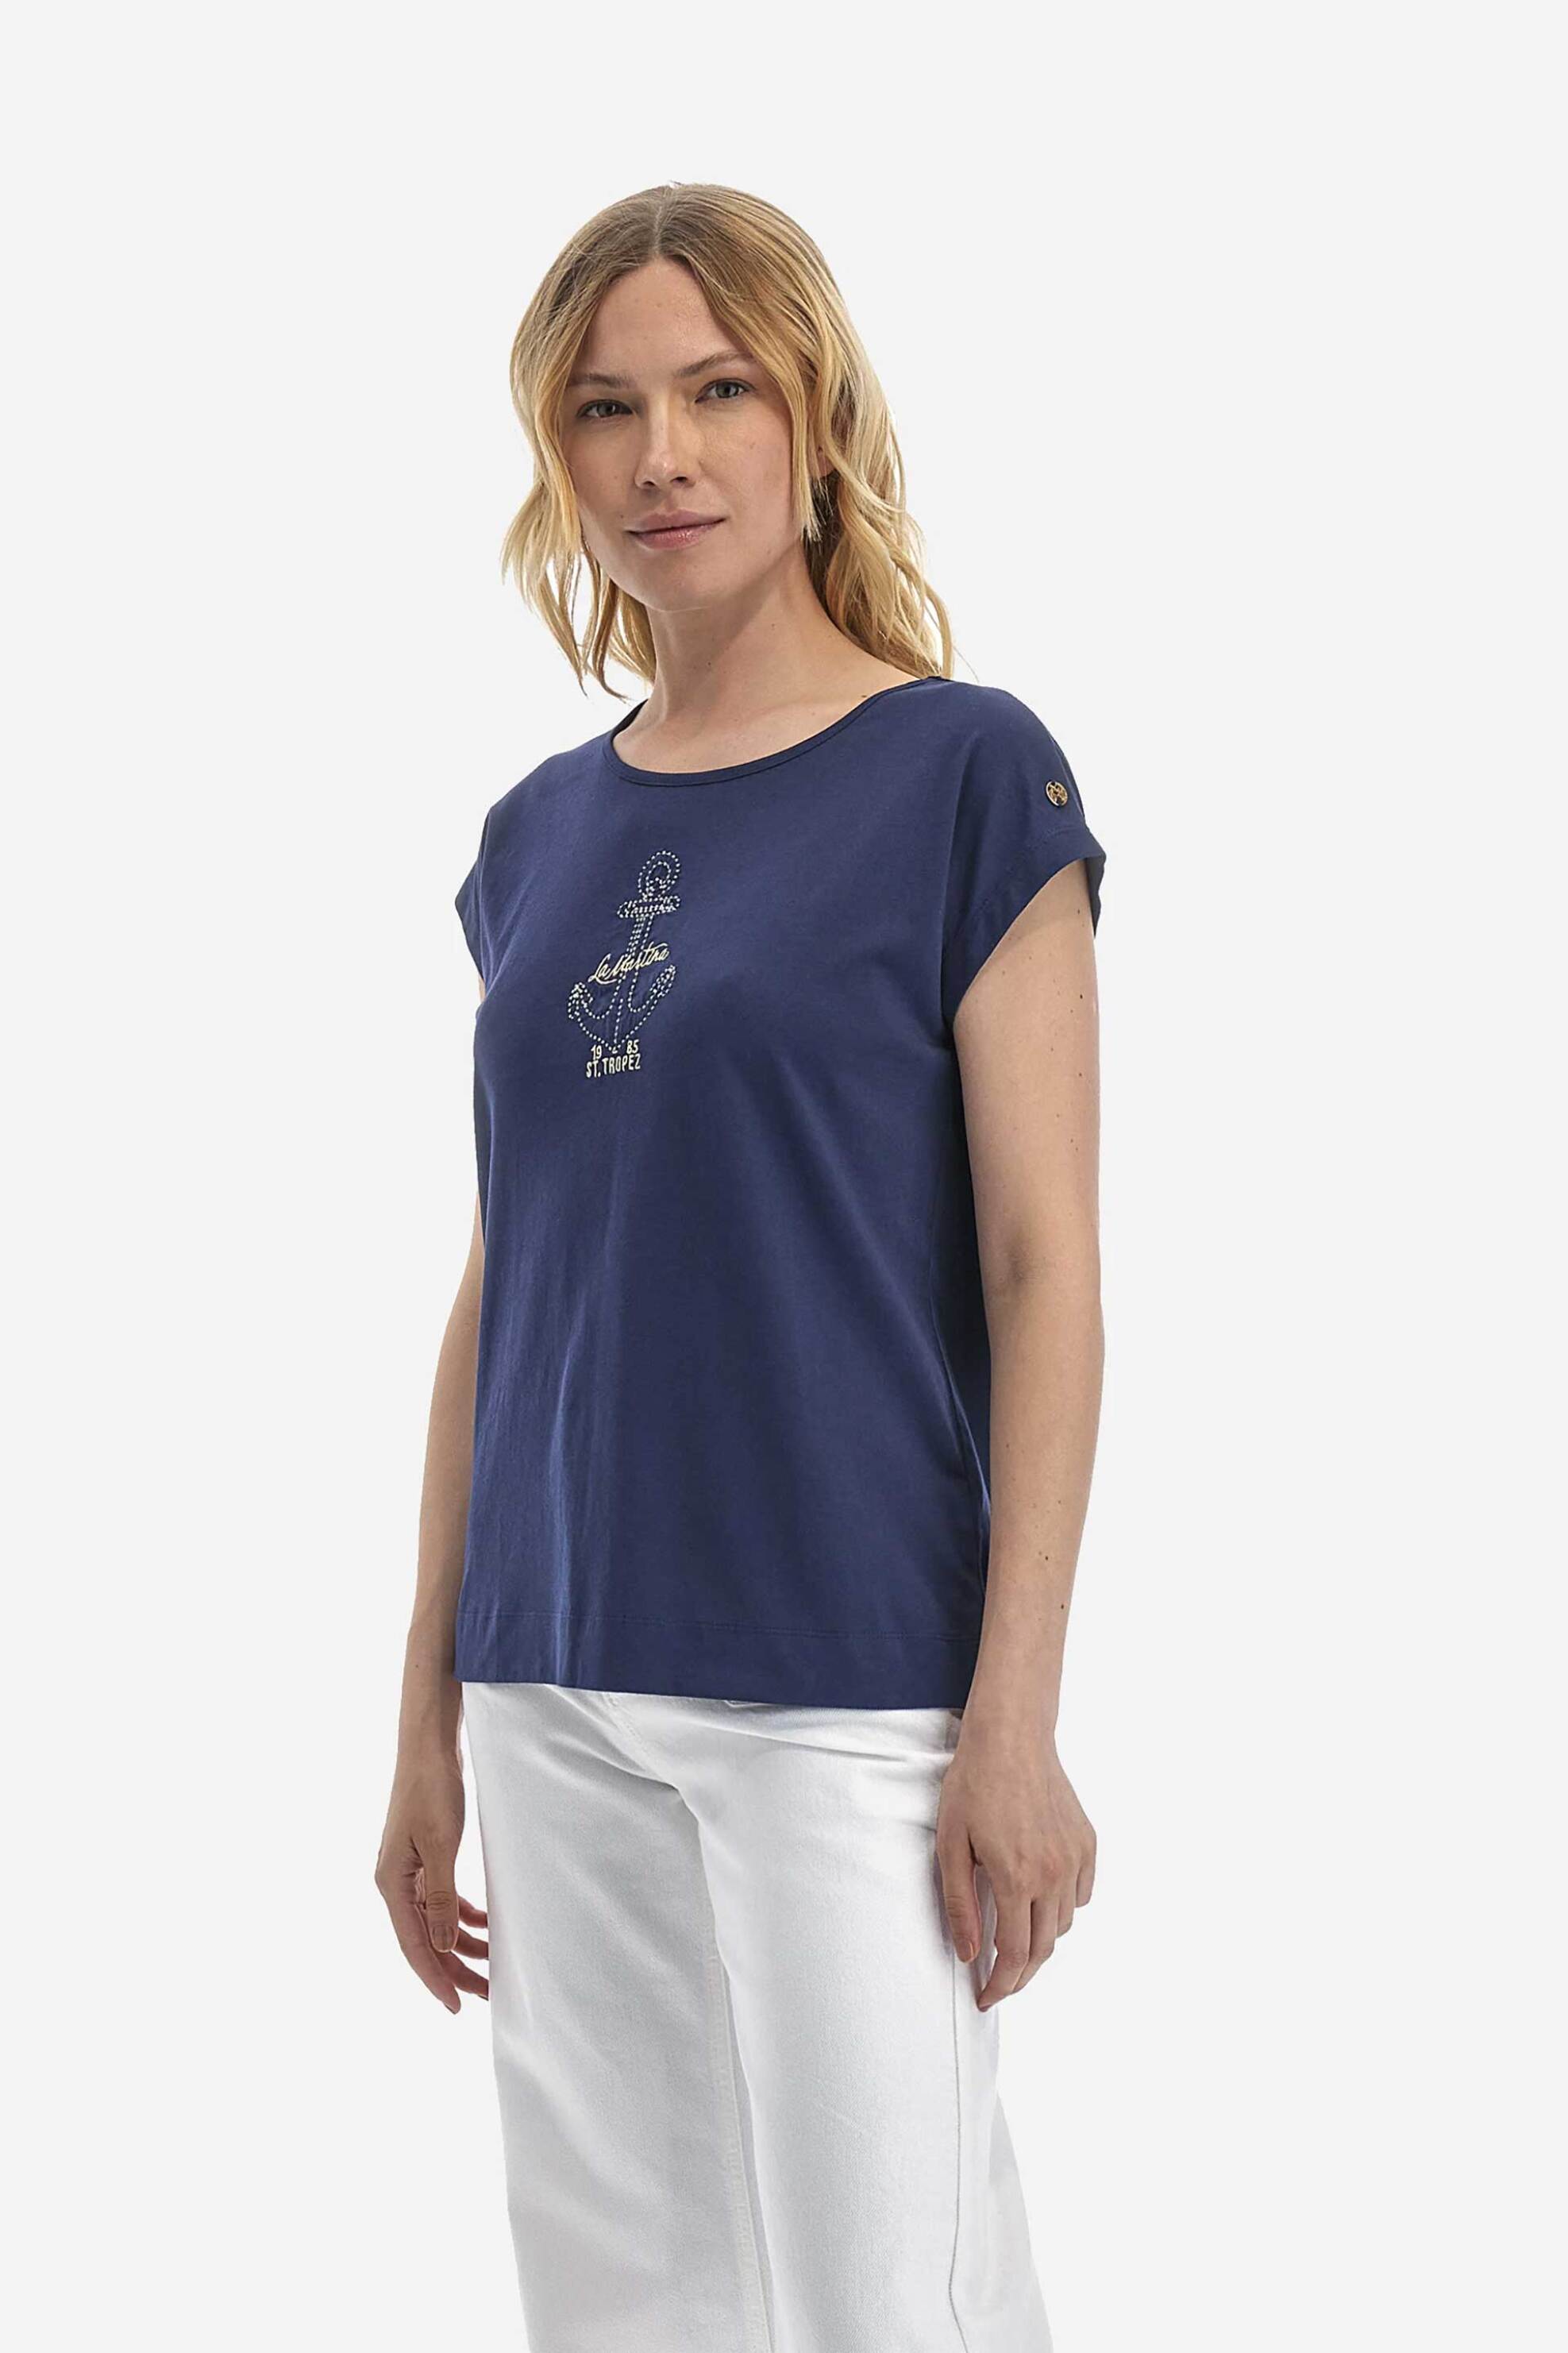 Γυναικεία Ρούχα & Αξεσουάρ > Γυναικεία Ρούχα > Γυναικεία Τοπ > Γυναικεία T-Shirts La Martina γυναικείο βαμβακερό T-shirt μονόχρωμο με κεντημένο λογότυπο και άνοιγμα στην πλάτη - YWR305-JS317 Μπλε Σκούρο